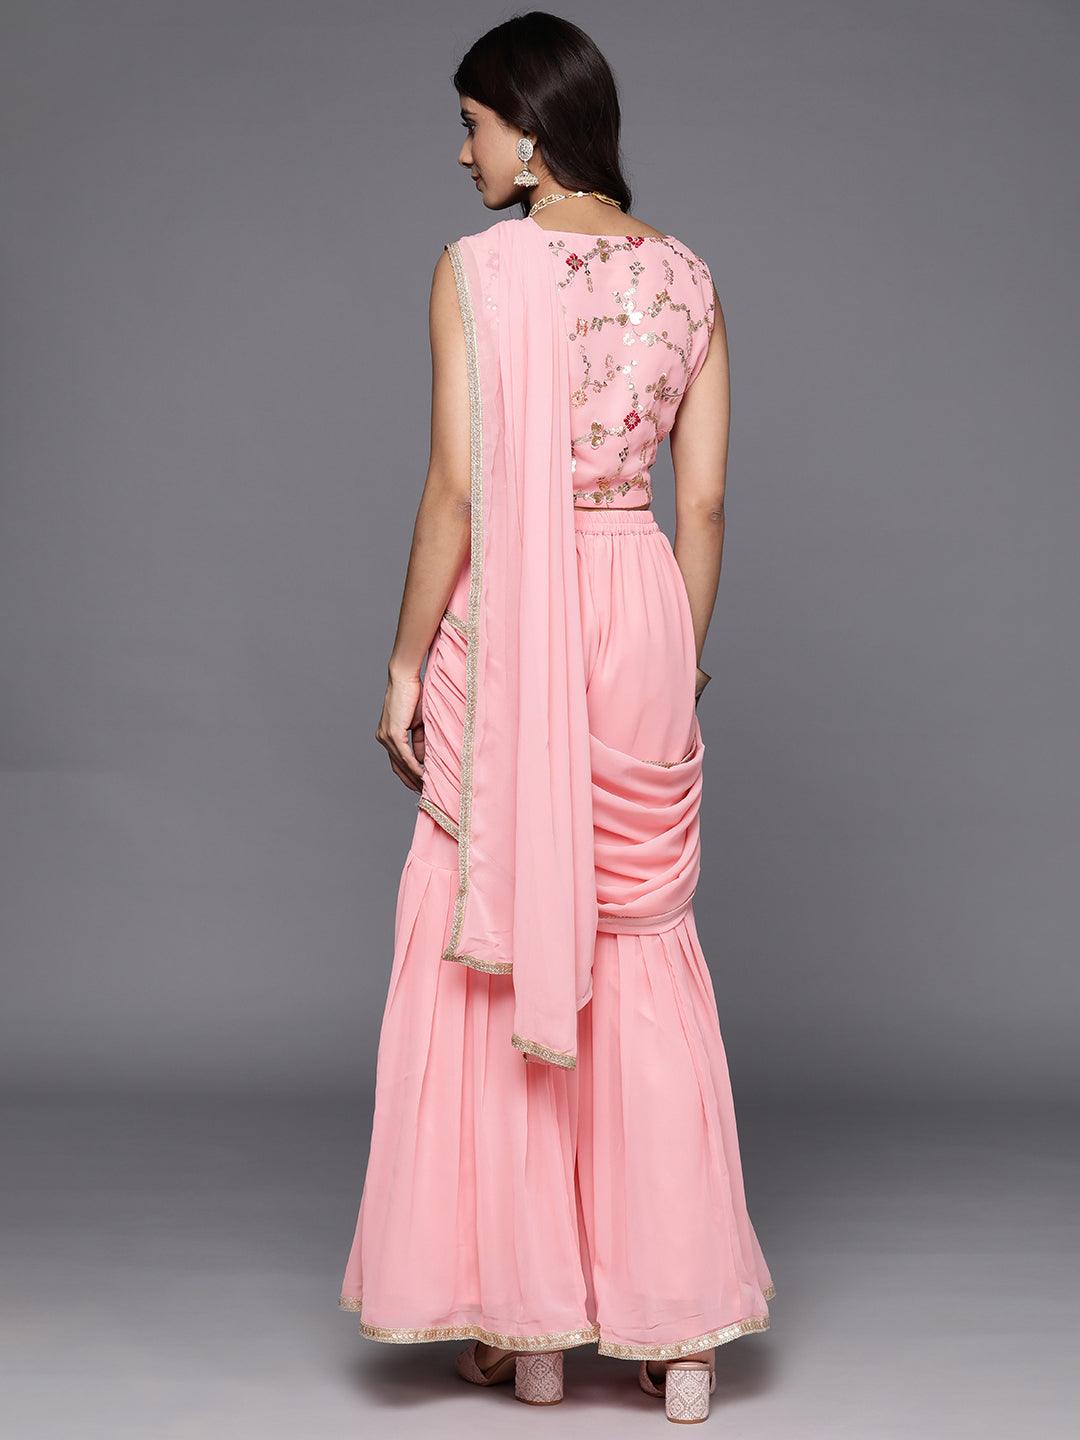 Pink Embellished Georgette Stitched Saree - ShopLibas